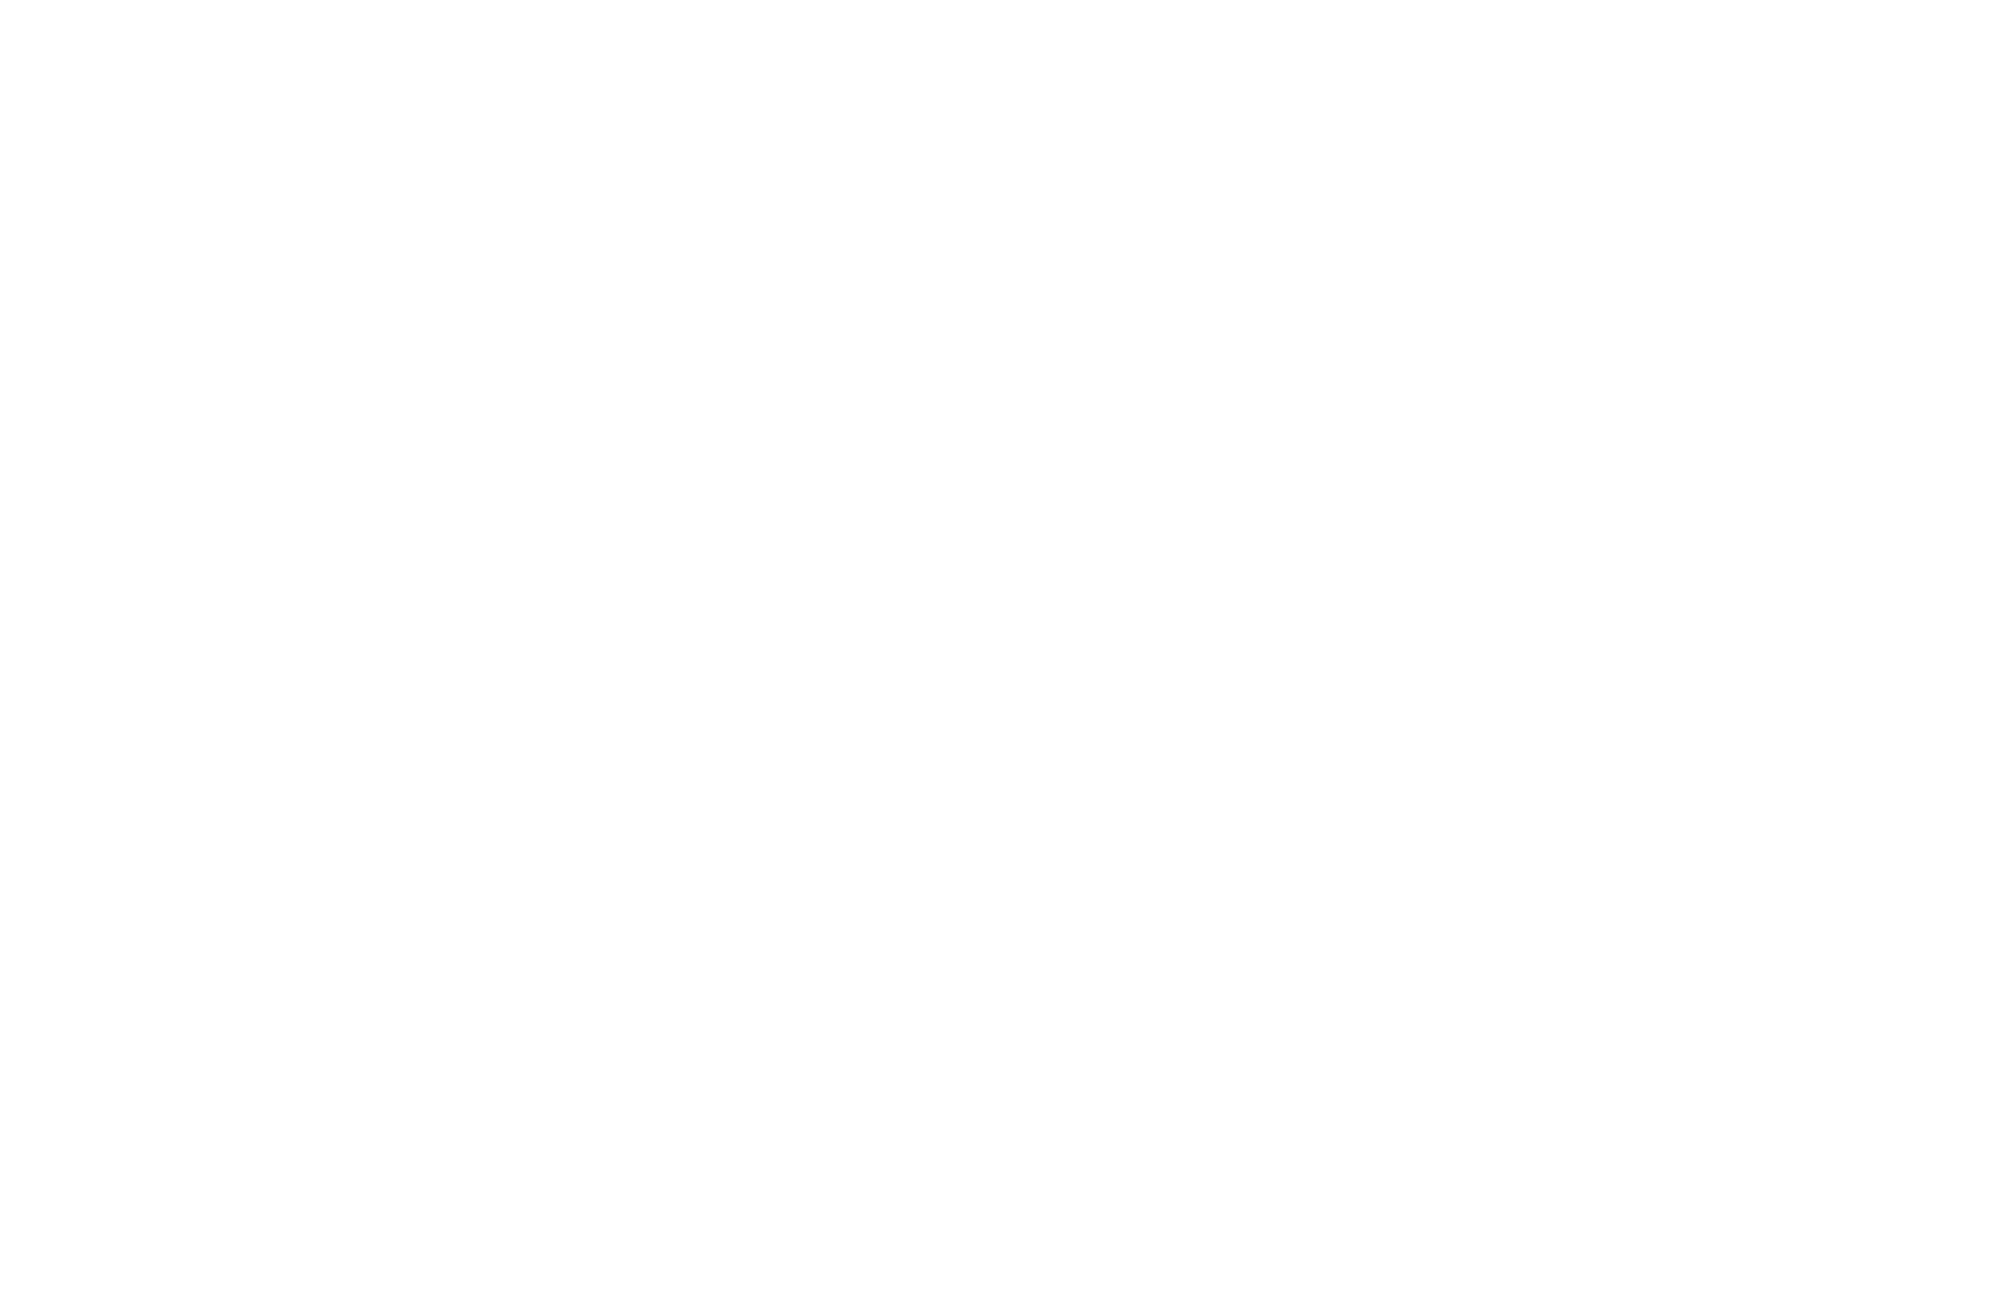 Verkaufsmagie by Verena Wi